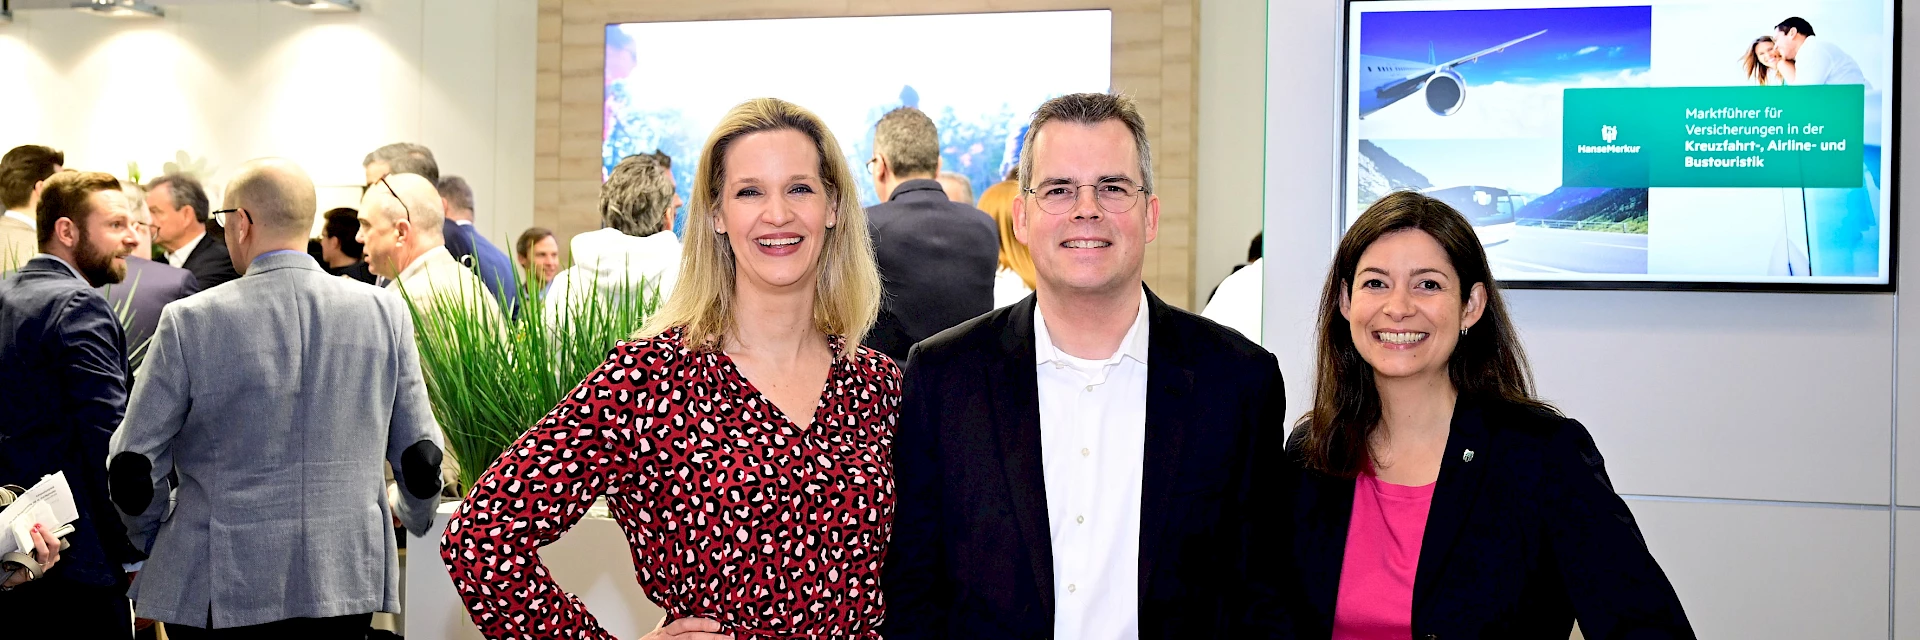 Johannes Ganser (M.), Vorstand der HanseMerkur, mit Katrin Rieger (l., Bereichsdirektorin Reisevertrieb Deutschland) und Vera Scheuermann (Bereichsdirektorin Reisevertrieb International & Online) auf der ITB.